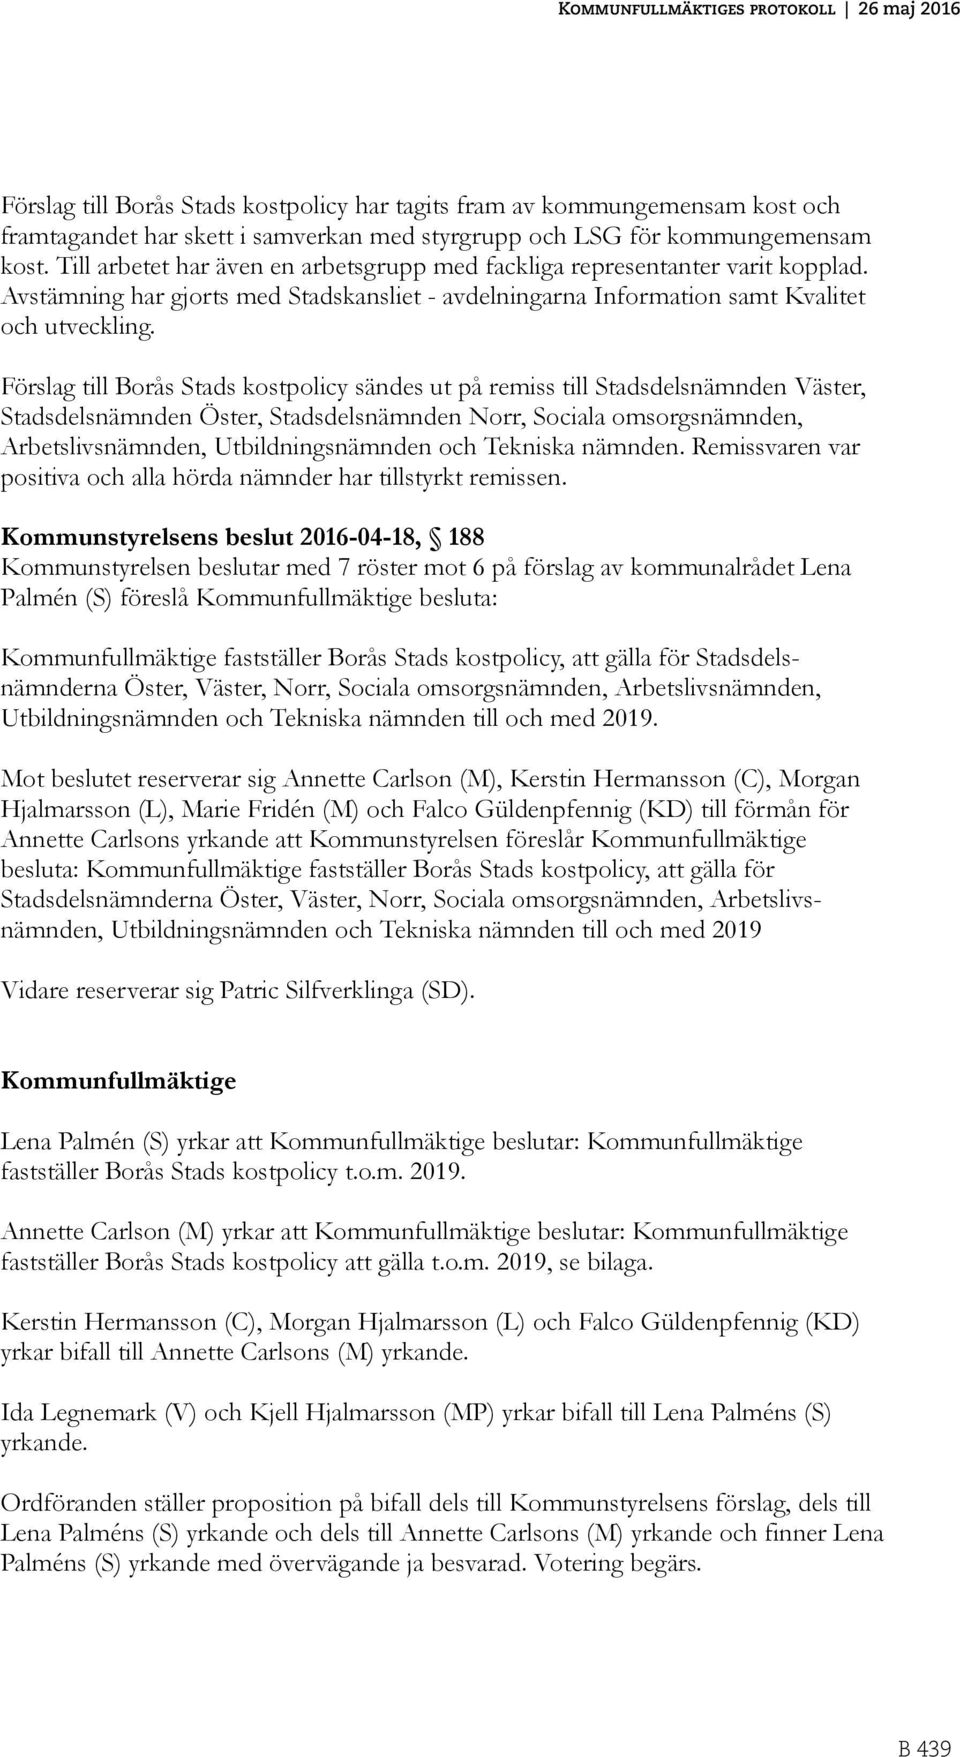 Förslag till Borås Stads kostpolicy sändes ut på remiss till Stadsdelsnämnden Väster, Stadsdelsnämnden Öster, Stadsdelsnämnden Norr, Sociala omsorgsnämnden, Arbetslivsnämnden, Utbildningsnämnden och